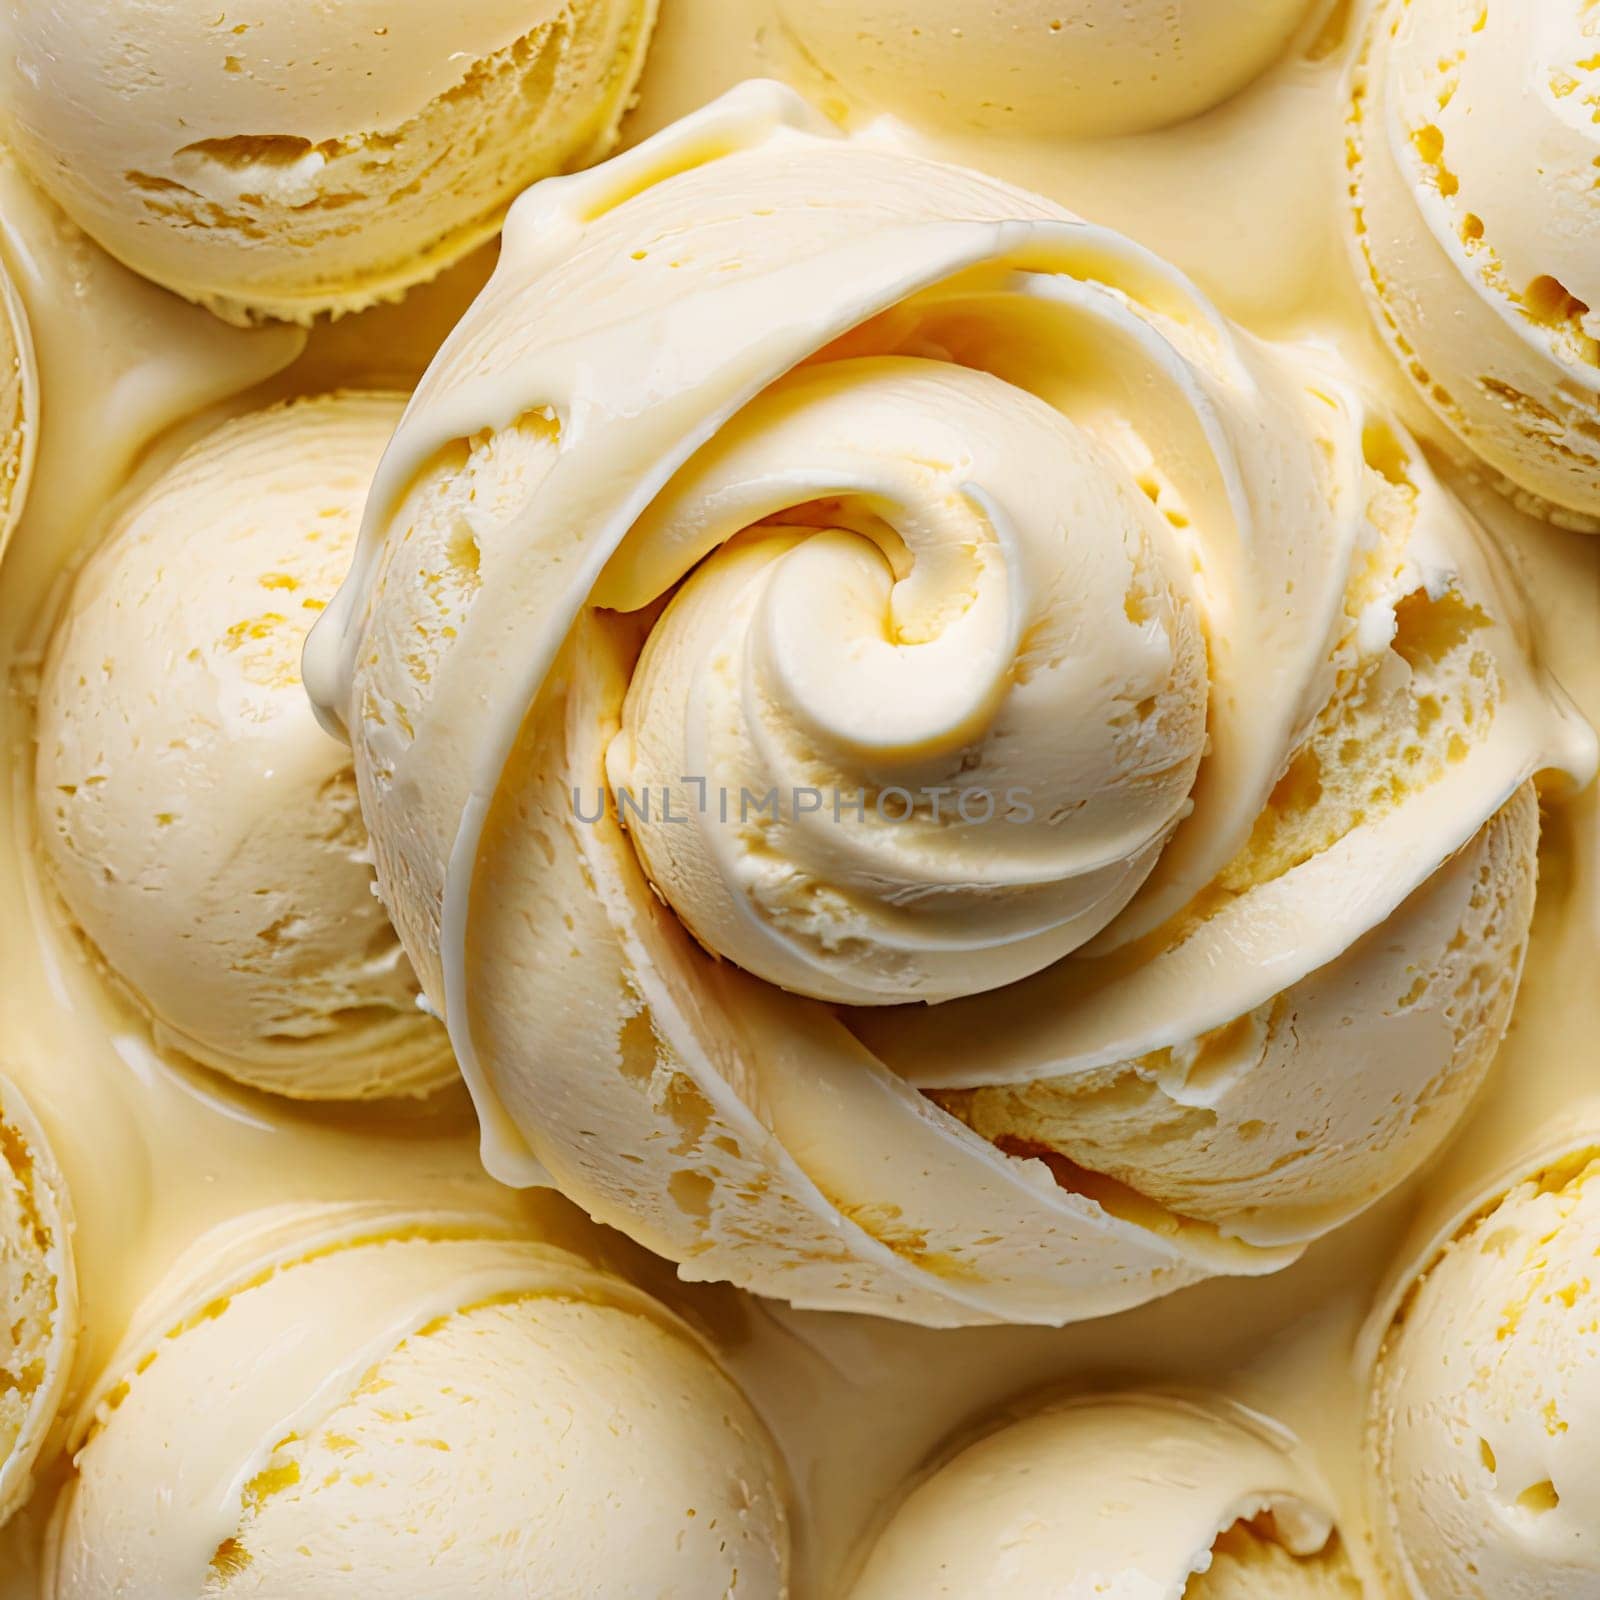 vanilla ice cream texture. by Ladouski